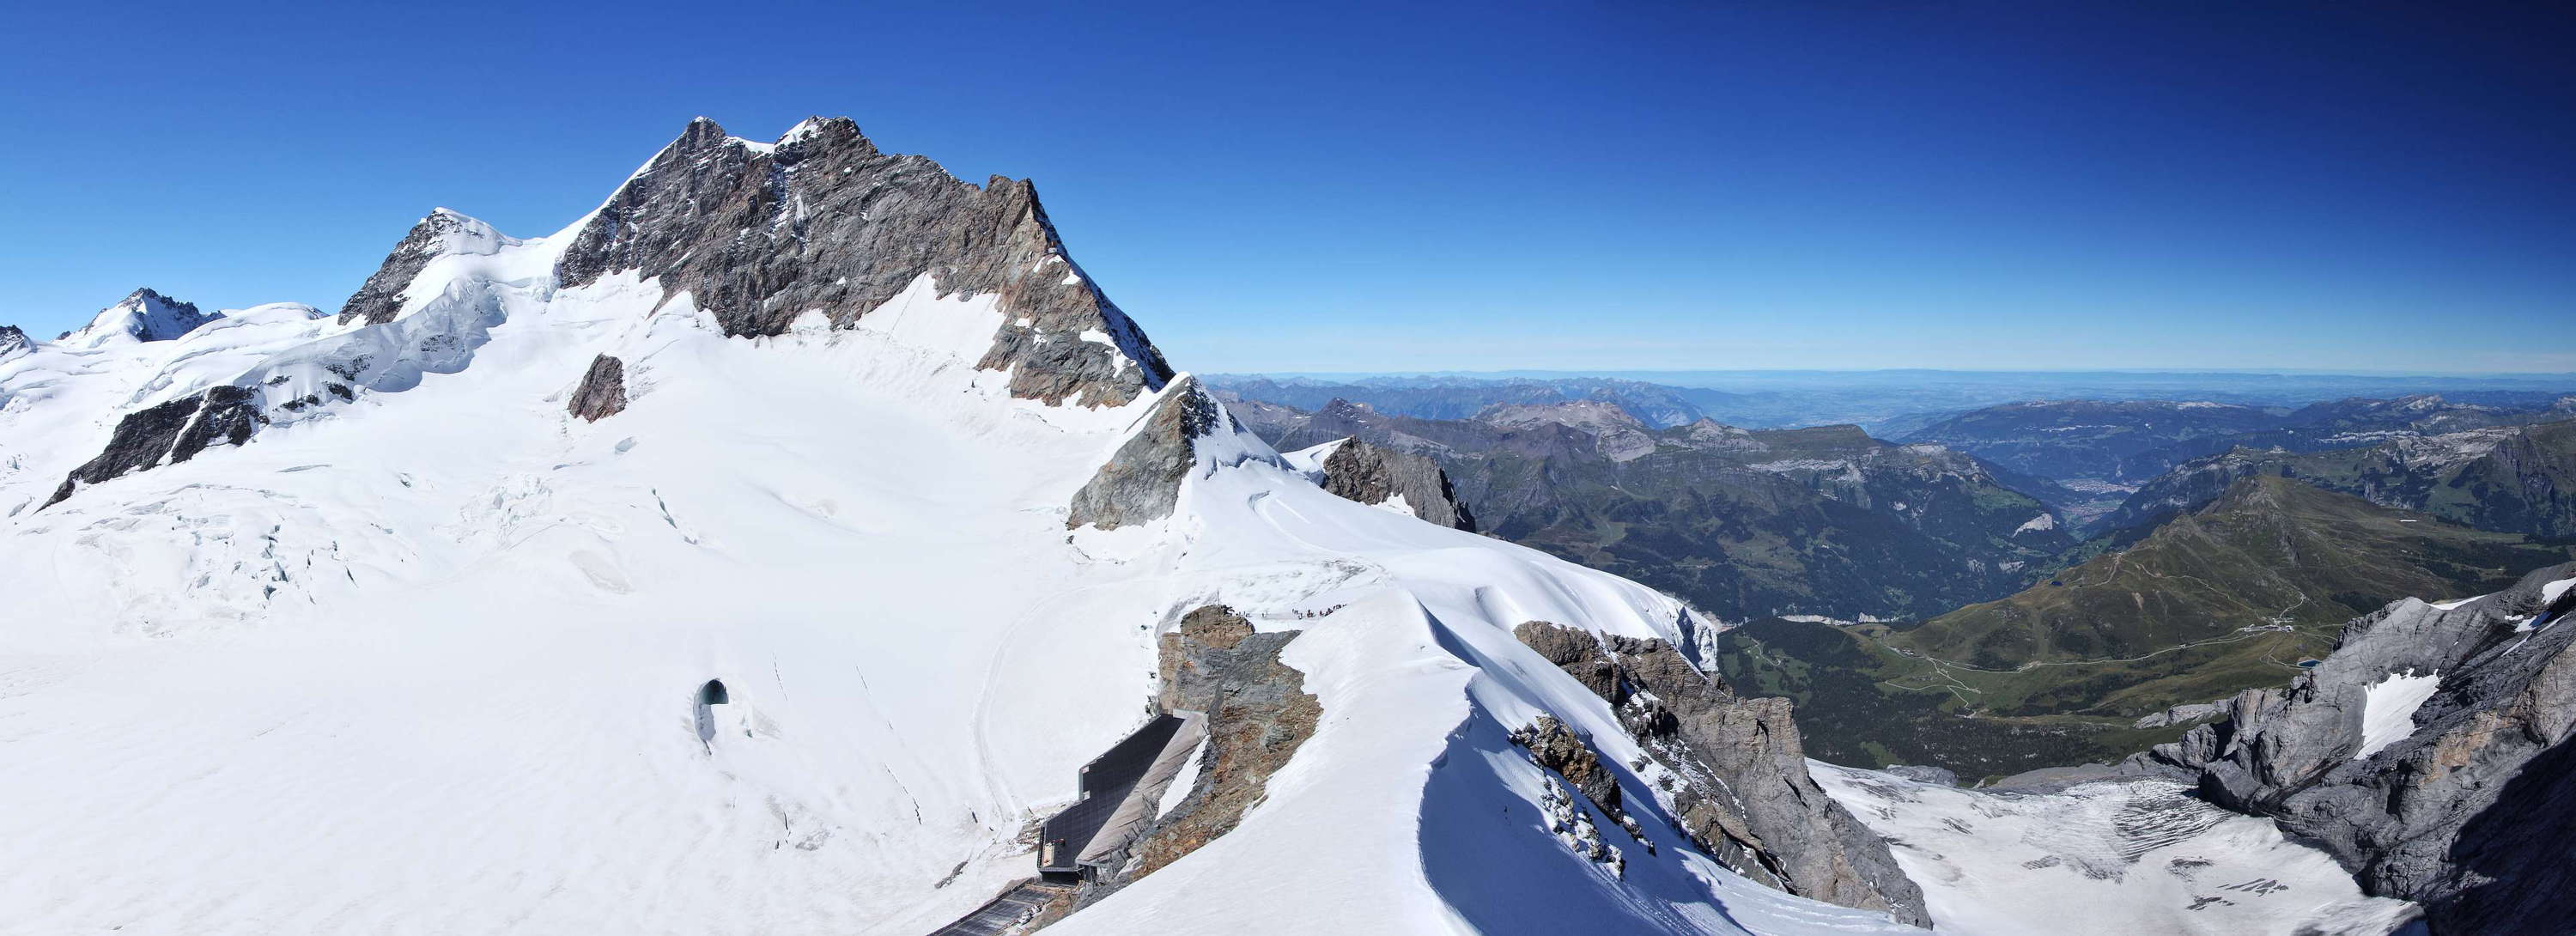 Jungfrau panorama